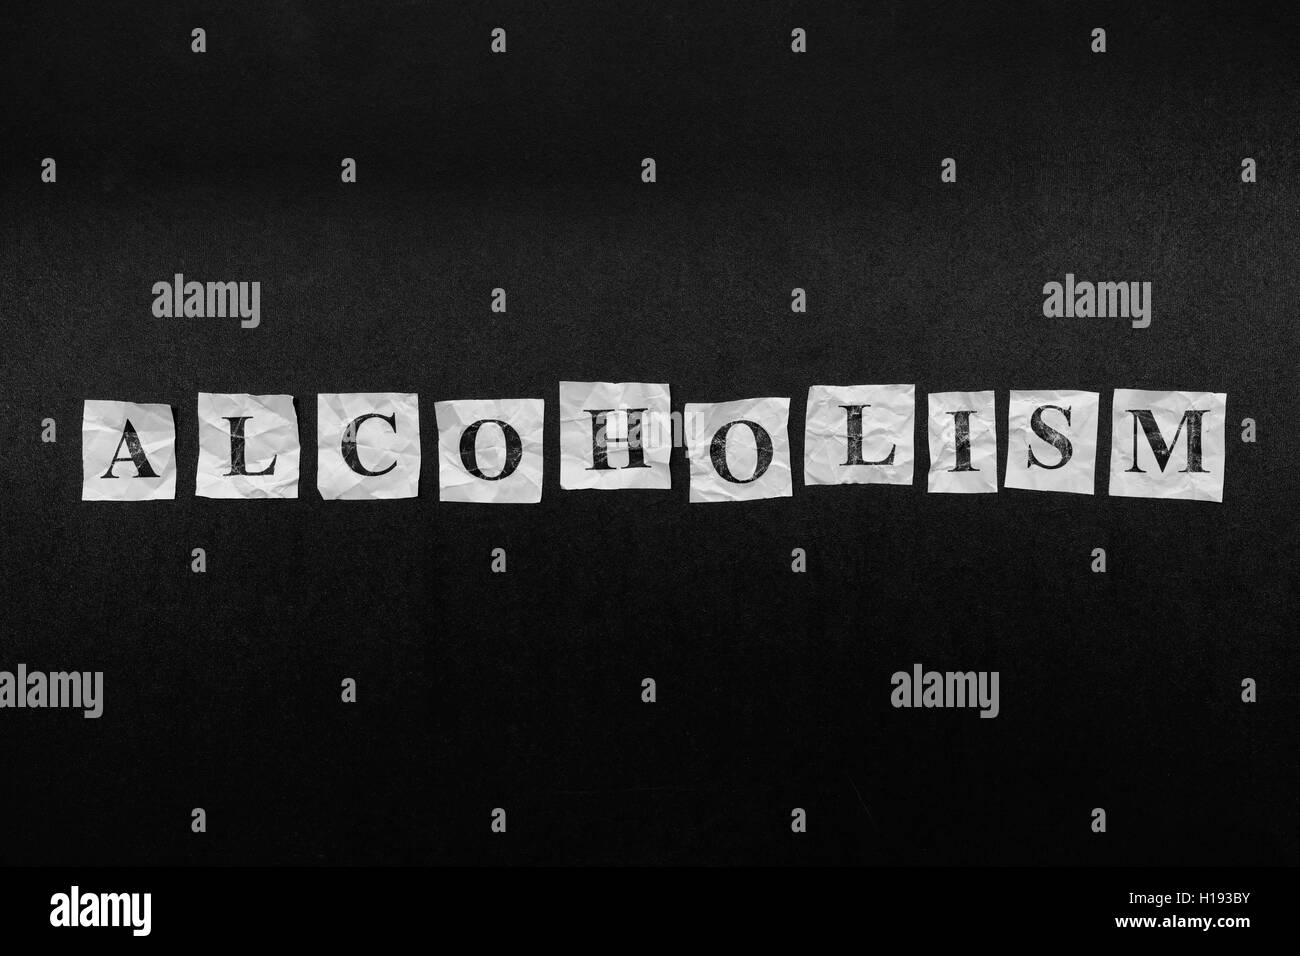 Alkoholismus. Notizen auf Papier mit dem Wort Alkoholismus. Konzept-Bild. Schwarz und weiß. Closeup. Stockfoto